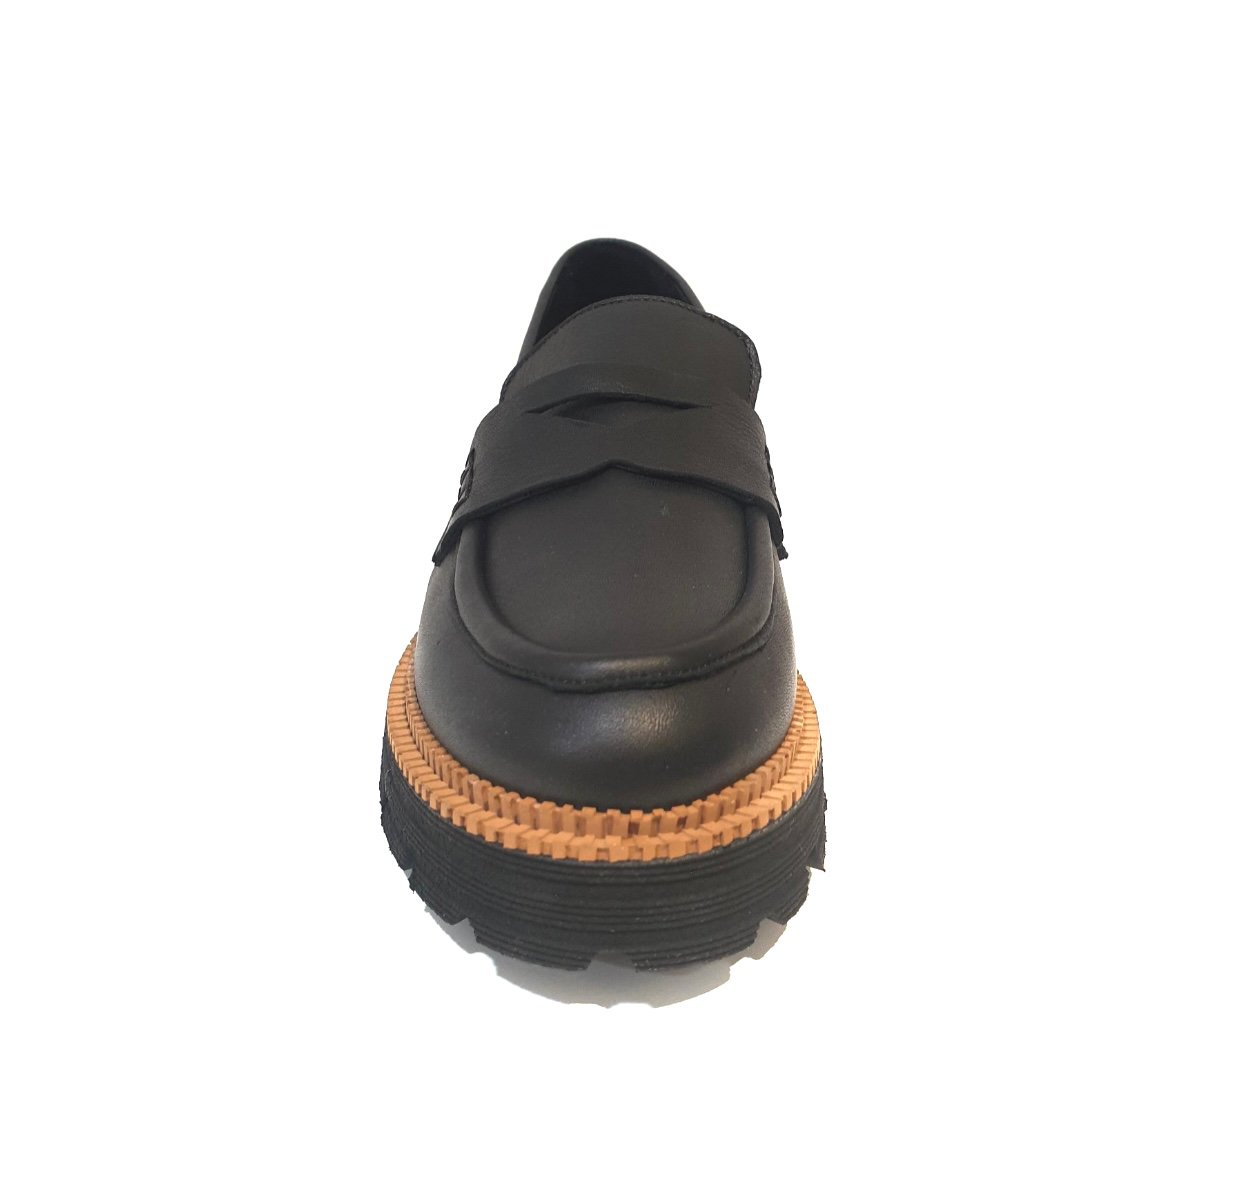 Sala Europe Loaf Black Slip On Shoe Made In Turkey